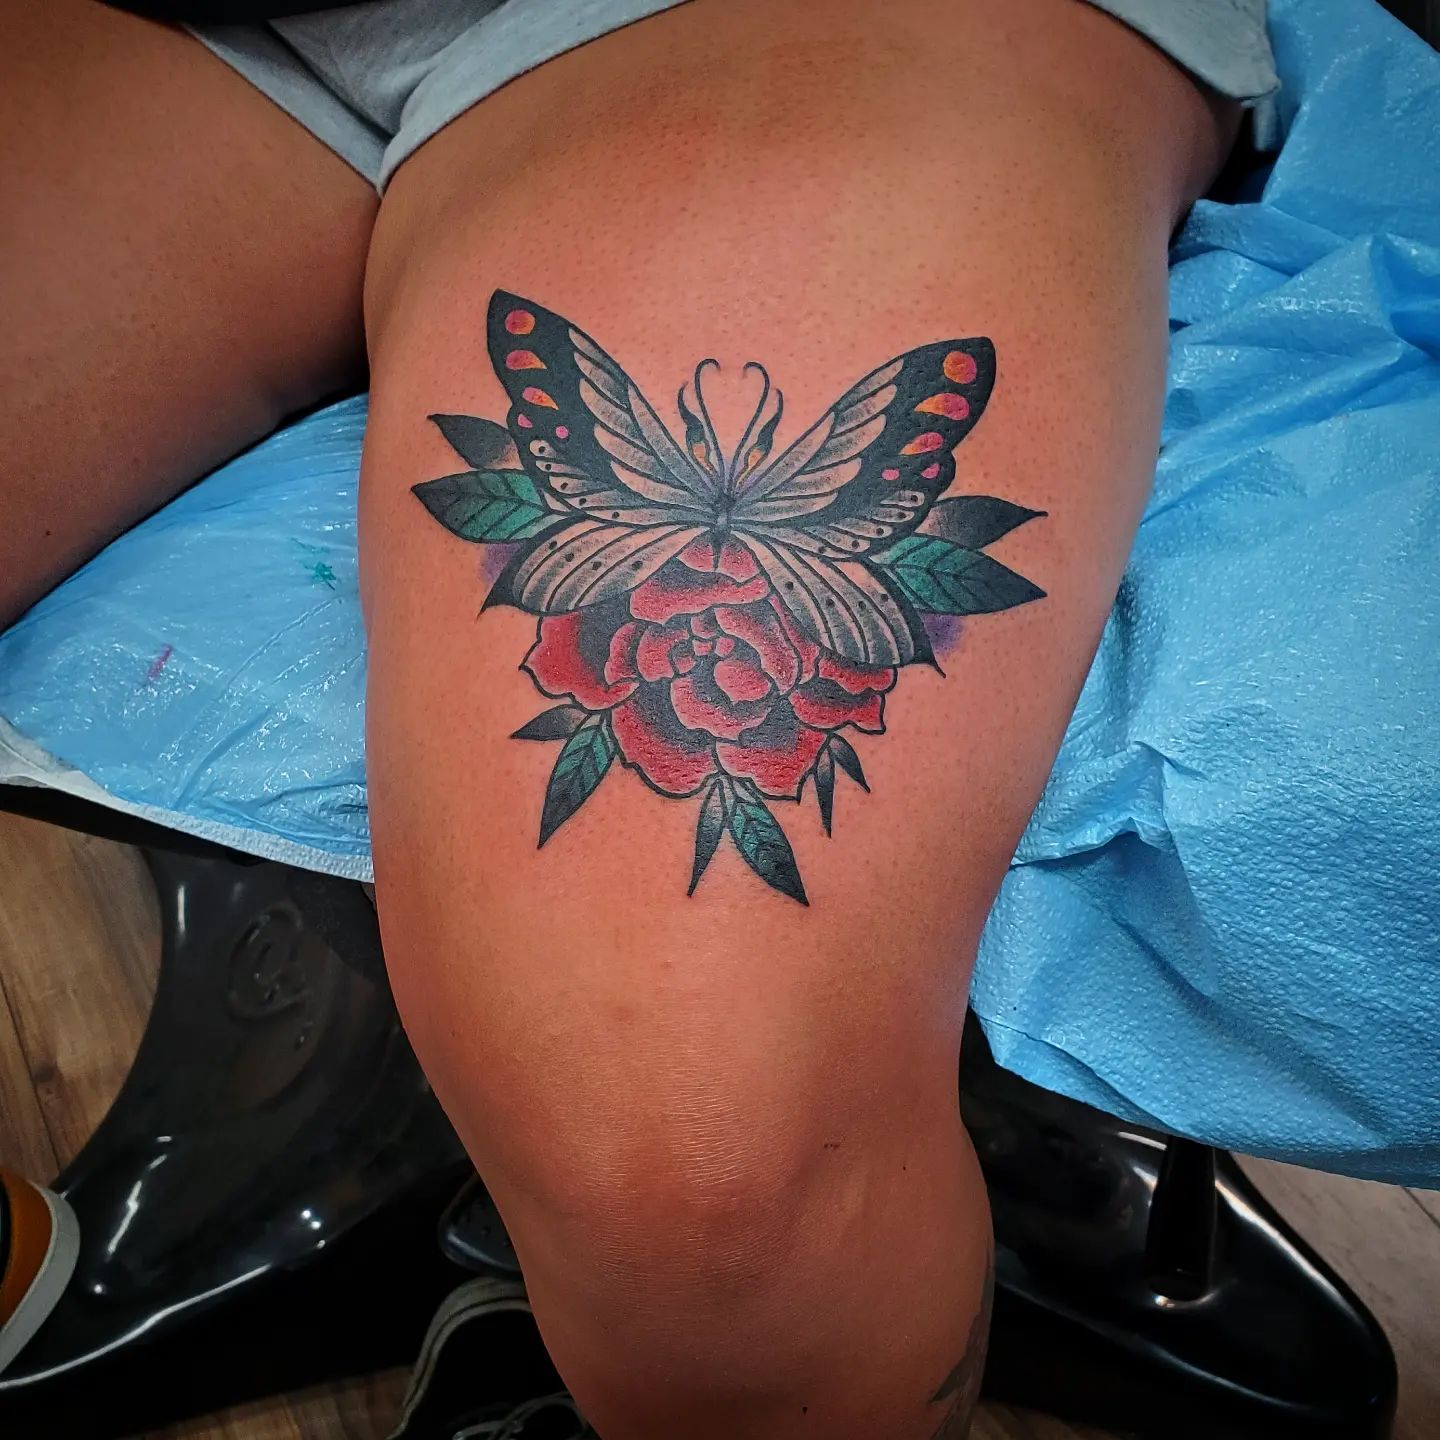 Tatuaje de mariposa en el muslo.